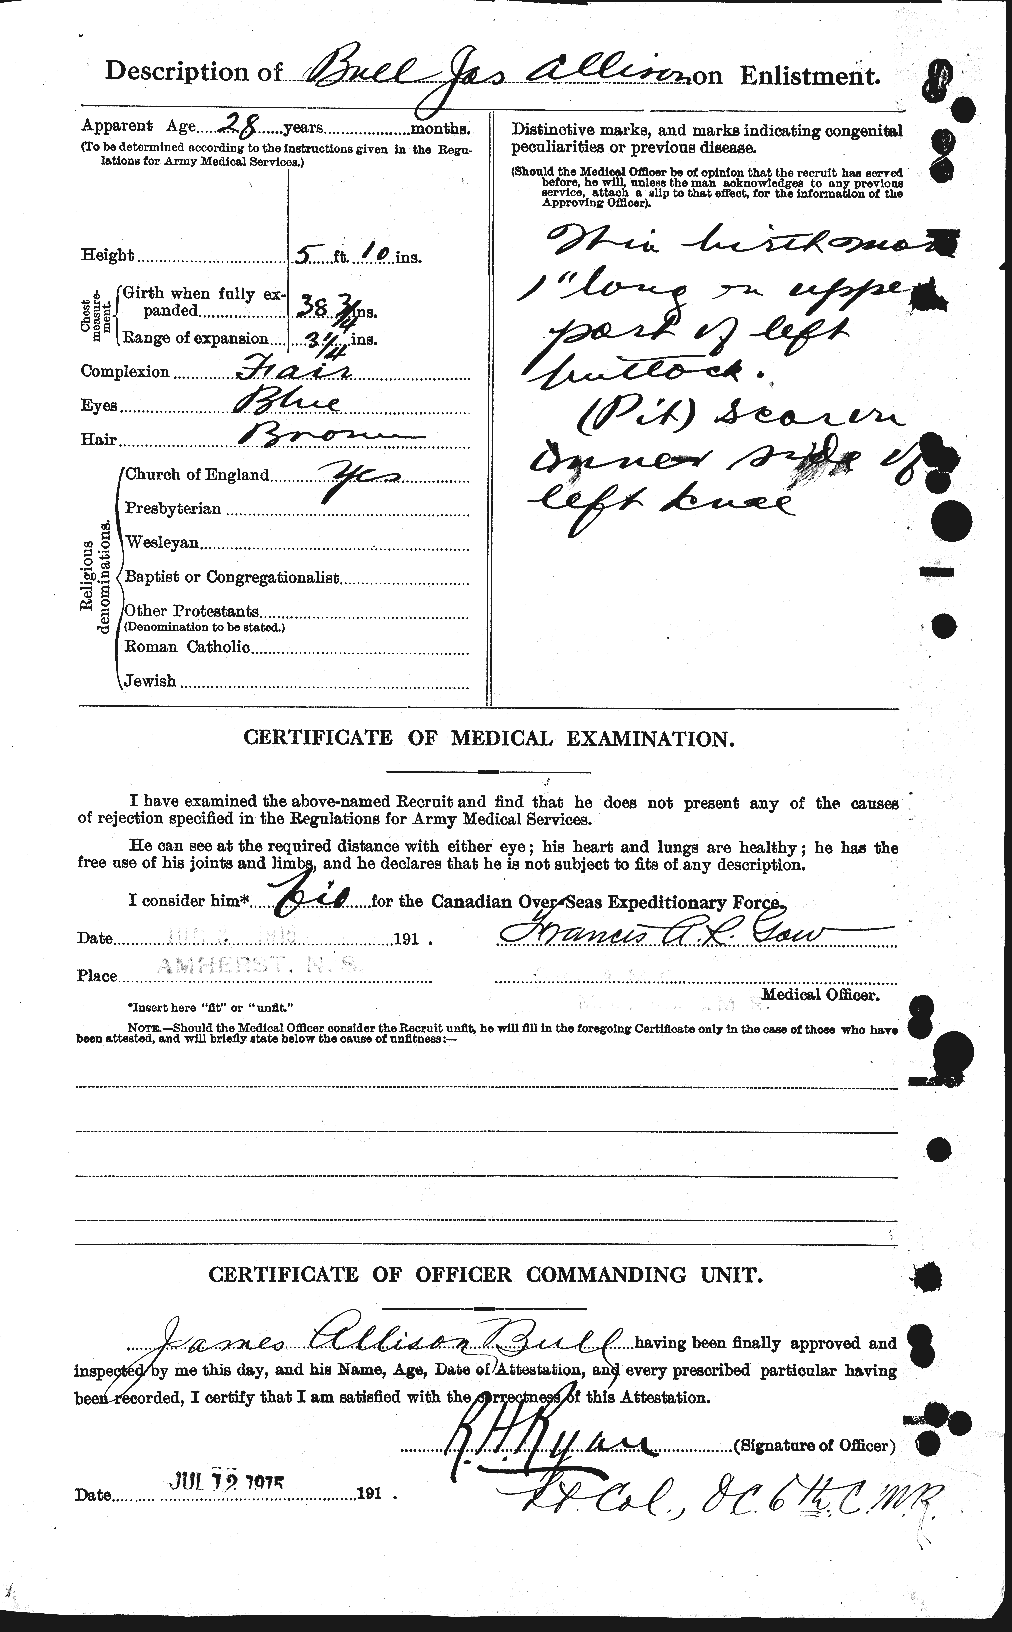 Dossiers du Personnel de la Première Guerre mondiale - CEC 273416b